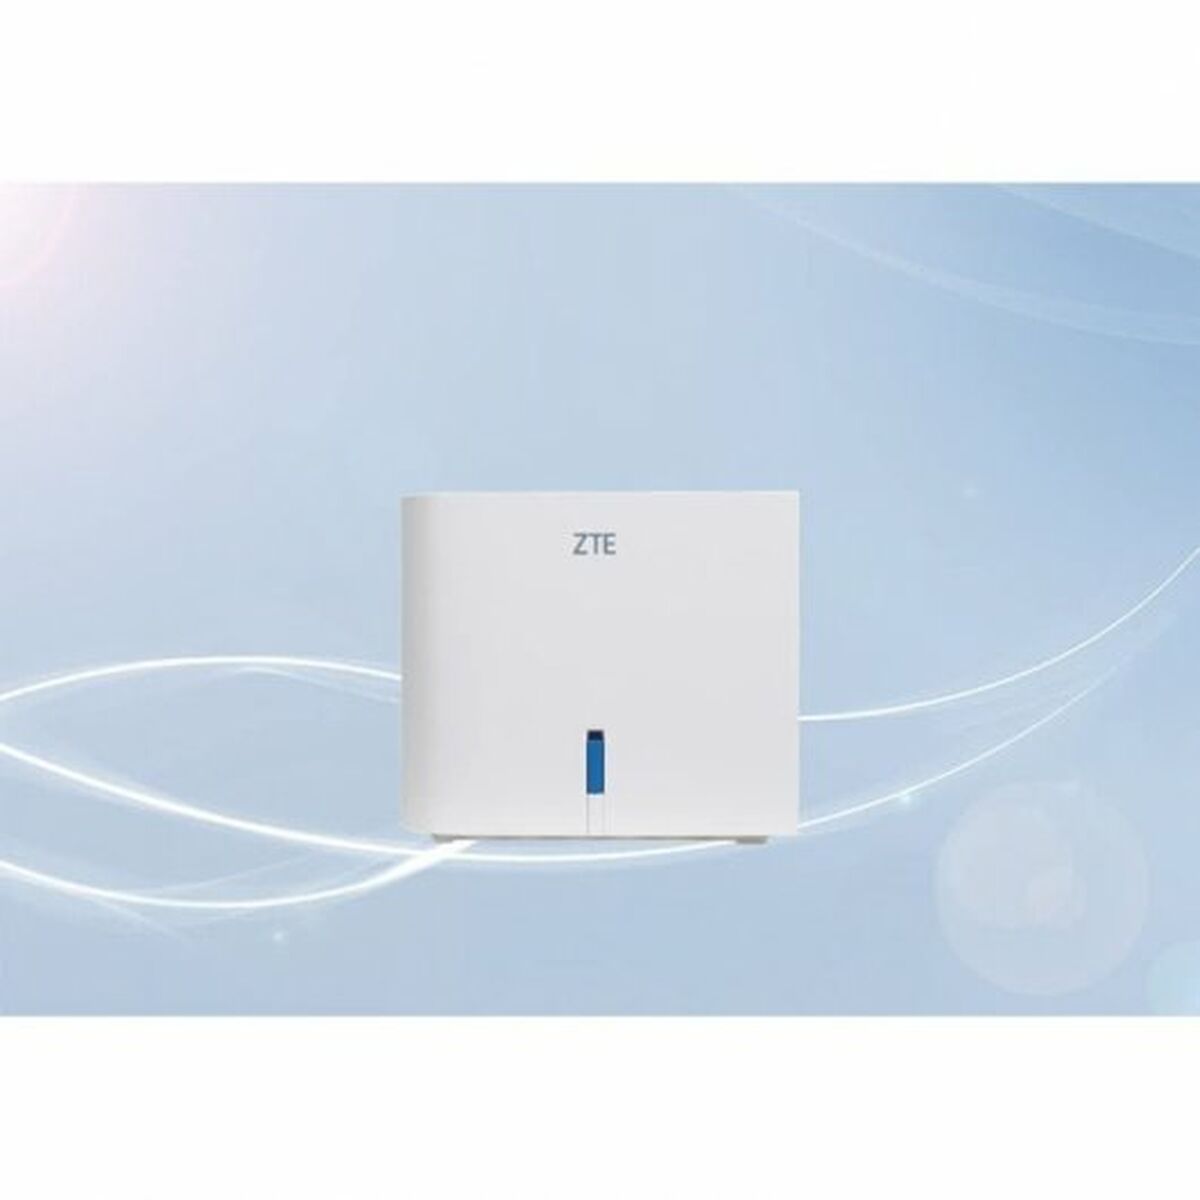 ZTE Z1200 Access Point